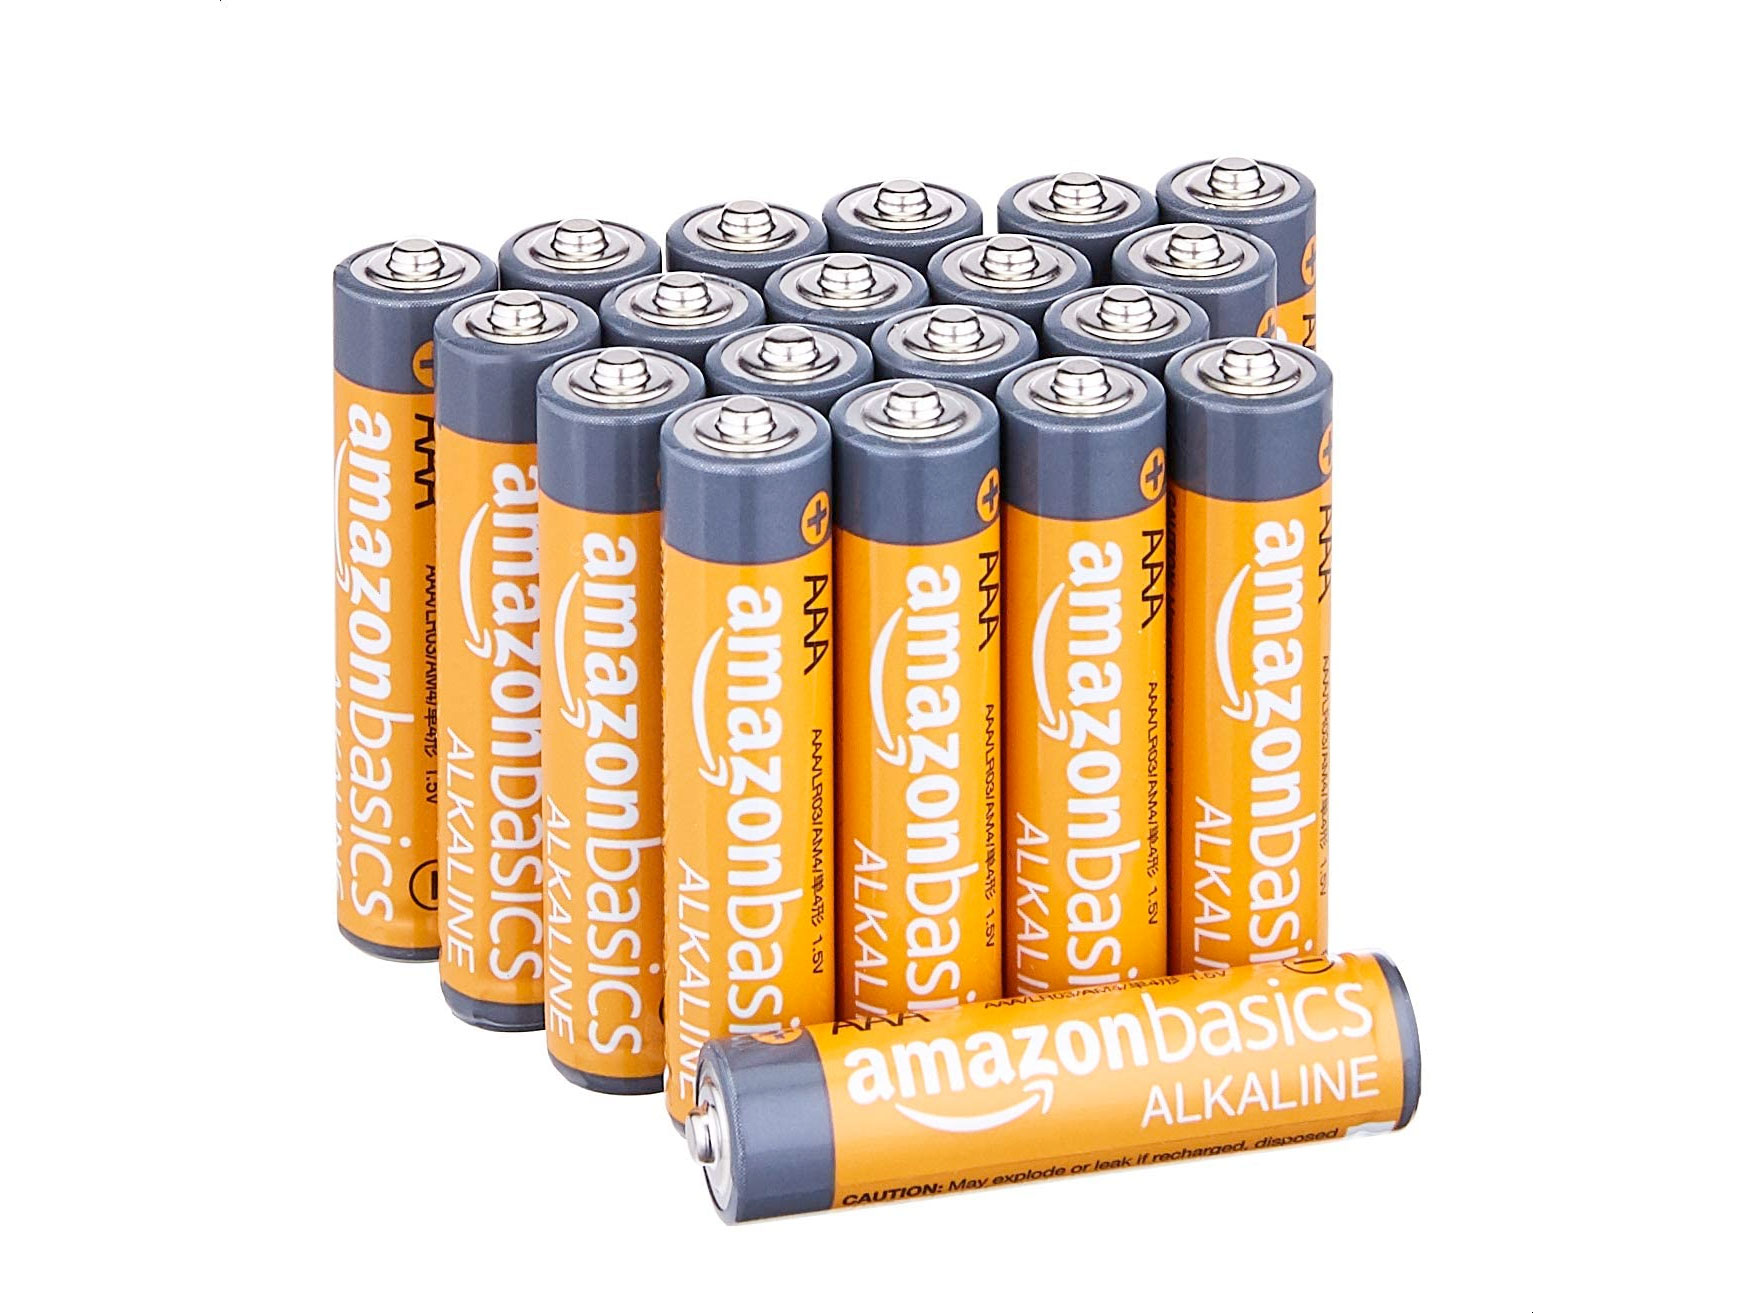 Amazon Basics AAA Alkaline 電池(20粒)只賣$5.98